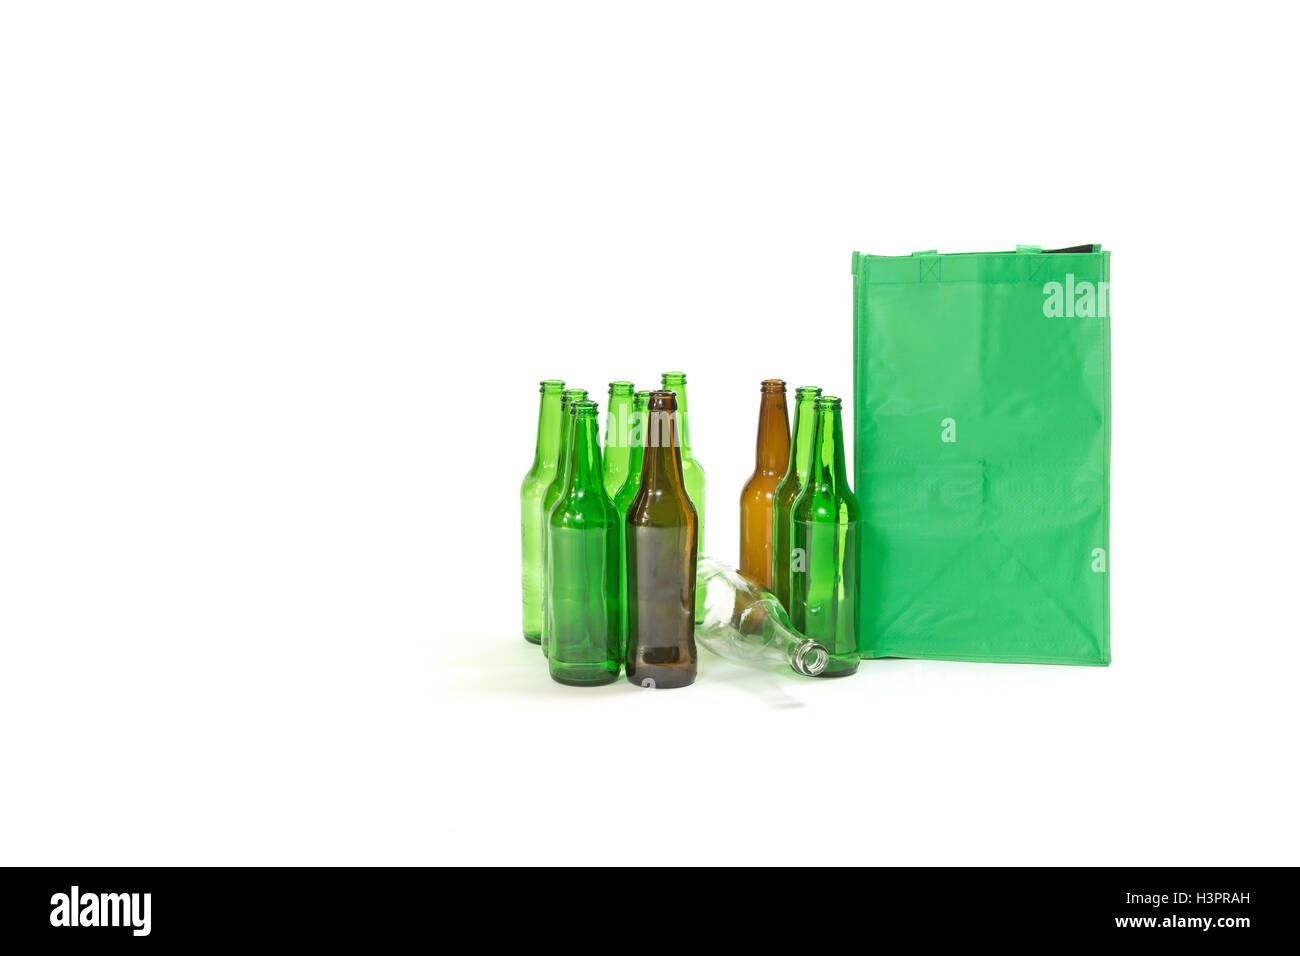 Gebrauchten Glasflaschen stehen auf dem weißen Hintergrund. Die leere grüne Tasche steht neben ihnen. Stockfoto